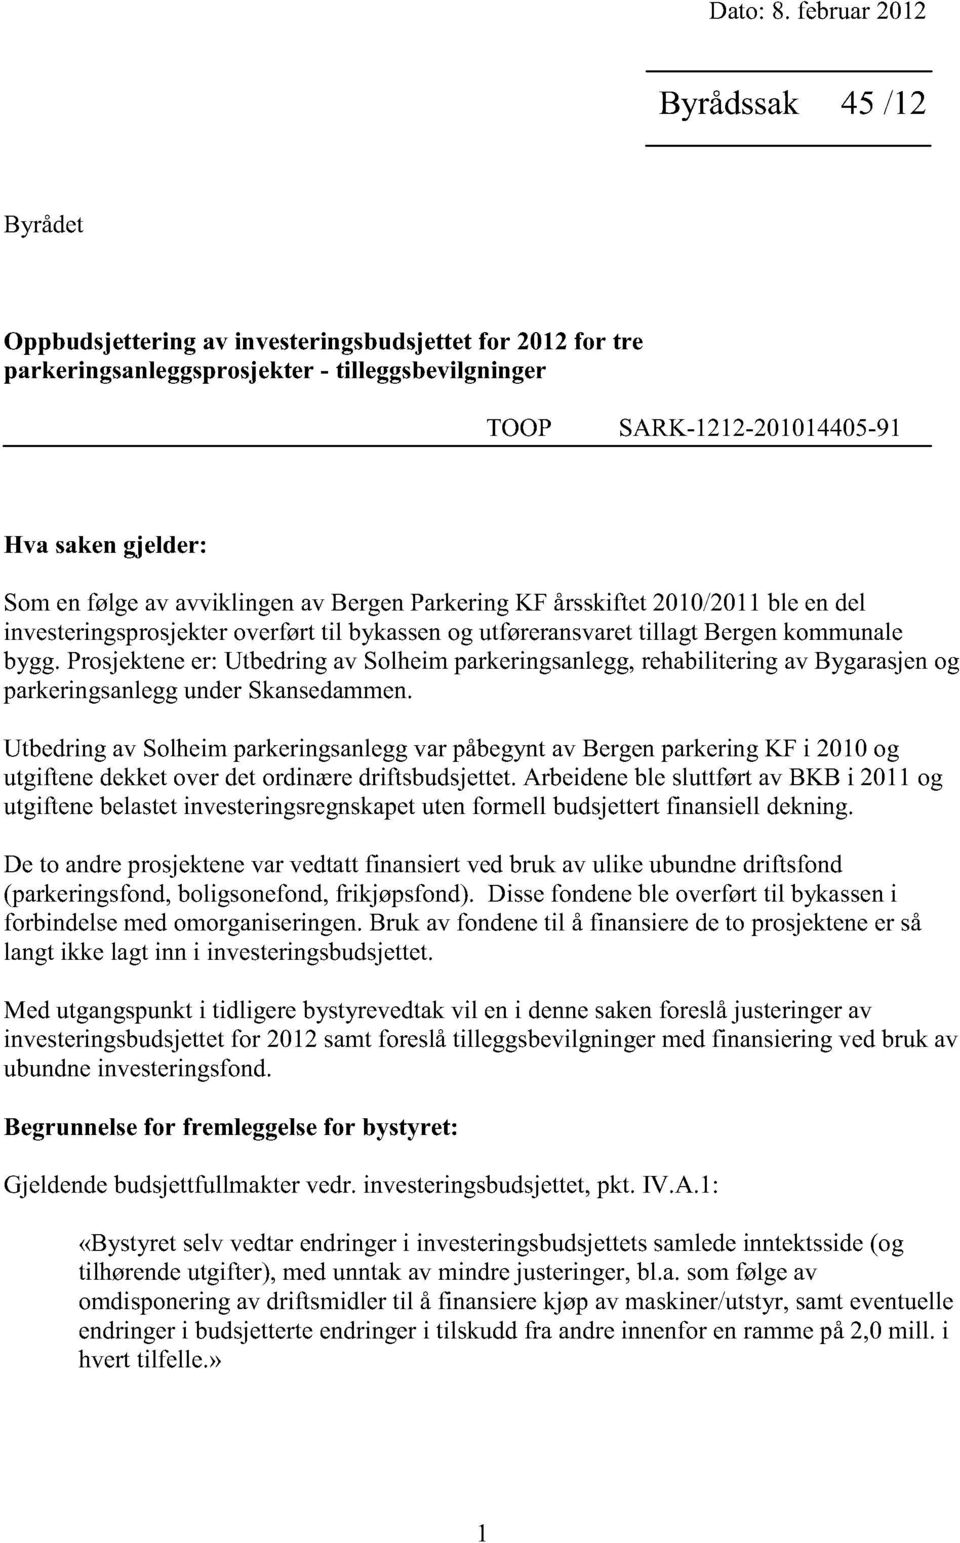 Somenfølgeav avviklingenav BergenParkeringKF årsskiftet2010/2011ble endel investeringsprosjekter overførttil bykassenog utføreransvaret tillagt Bergenkommunale bygg.